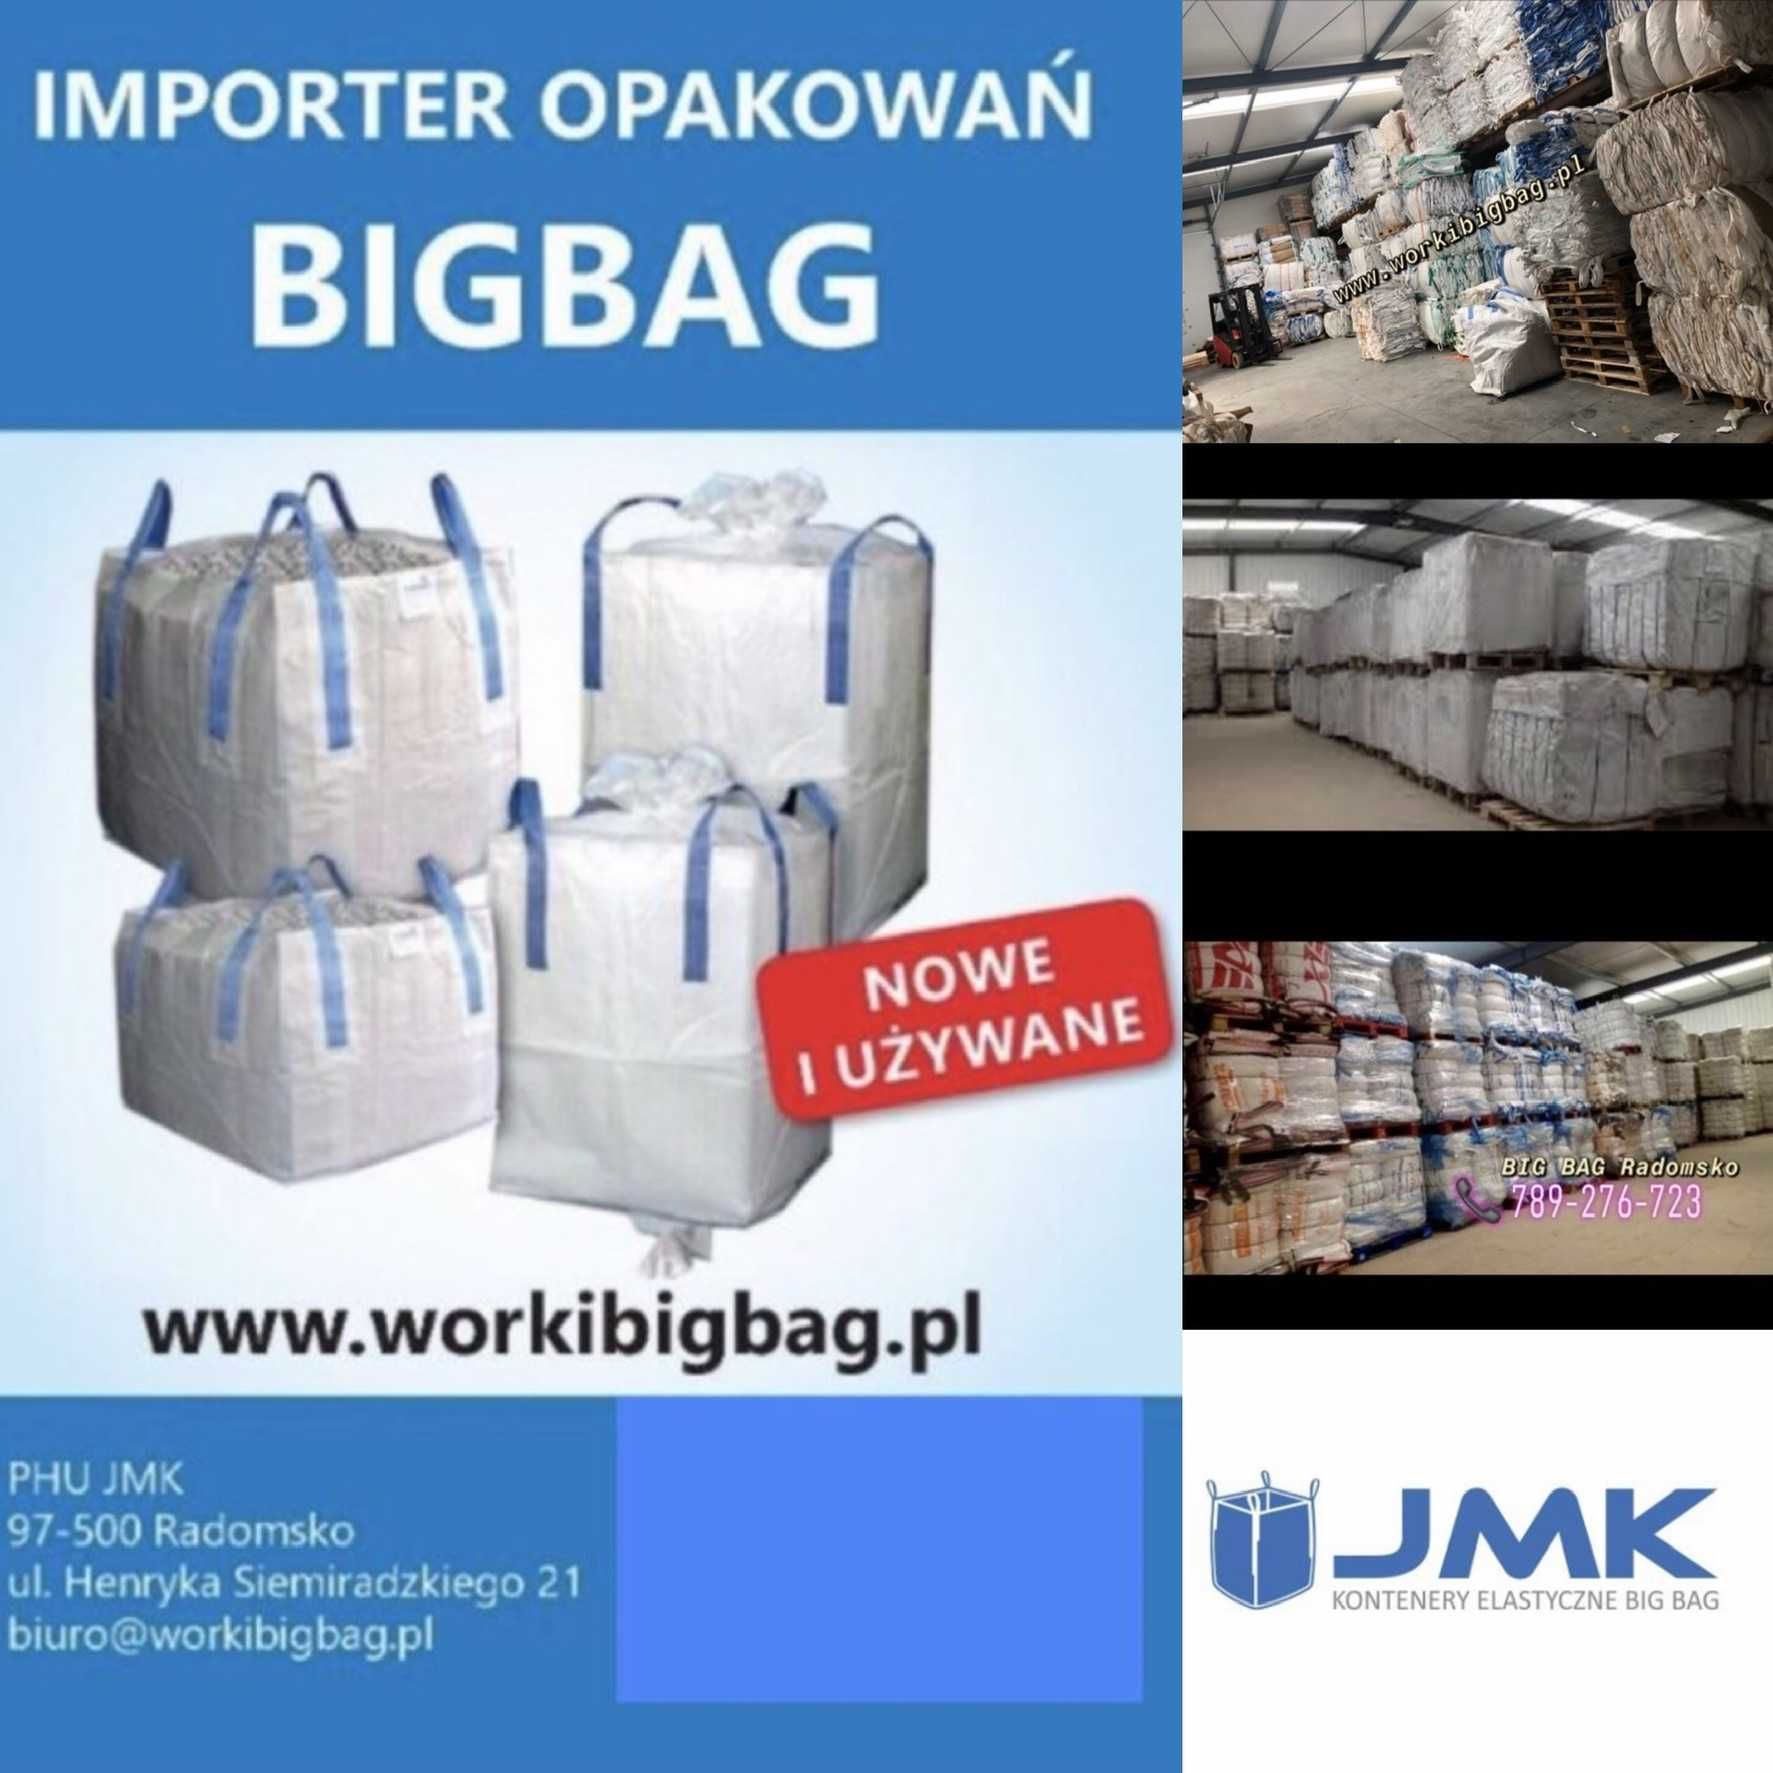 Worki Big Bag NOWE 140/89/91 Big Bag Bagi Szybka Wysyłka